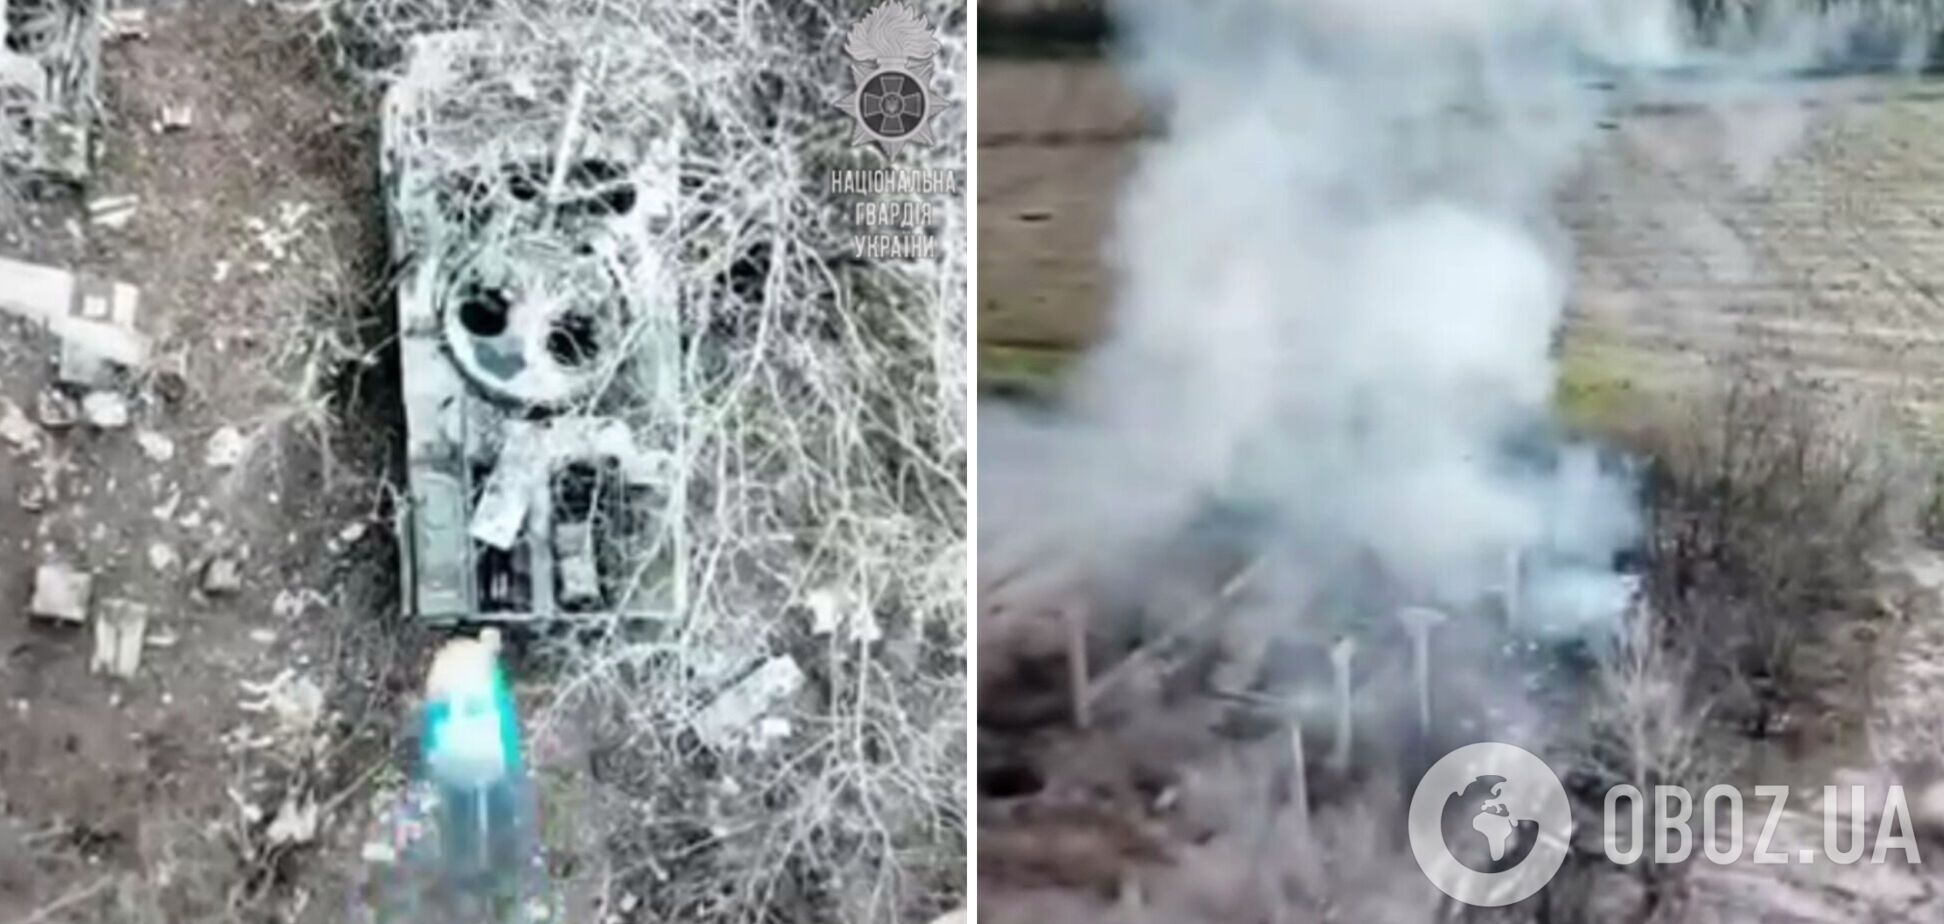 Взрыв был мощным: спецназовцы Нацгвардии на Луганщине уничтожили вражескую БМП. Видео